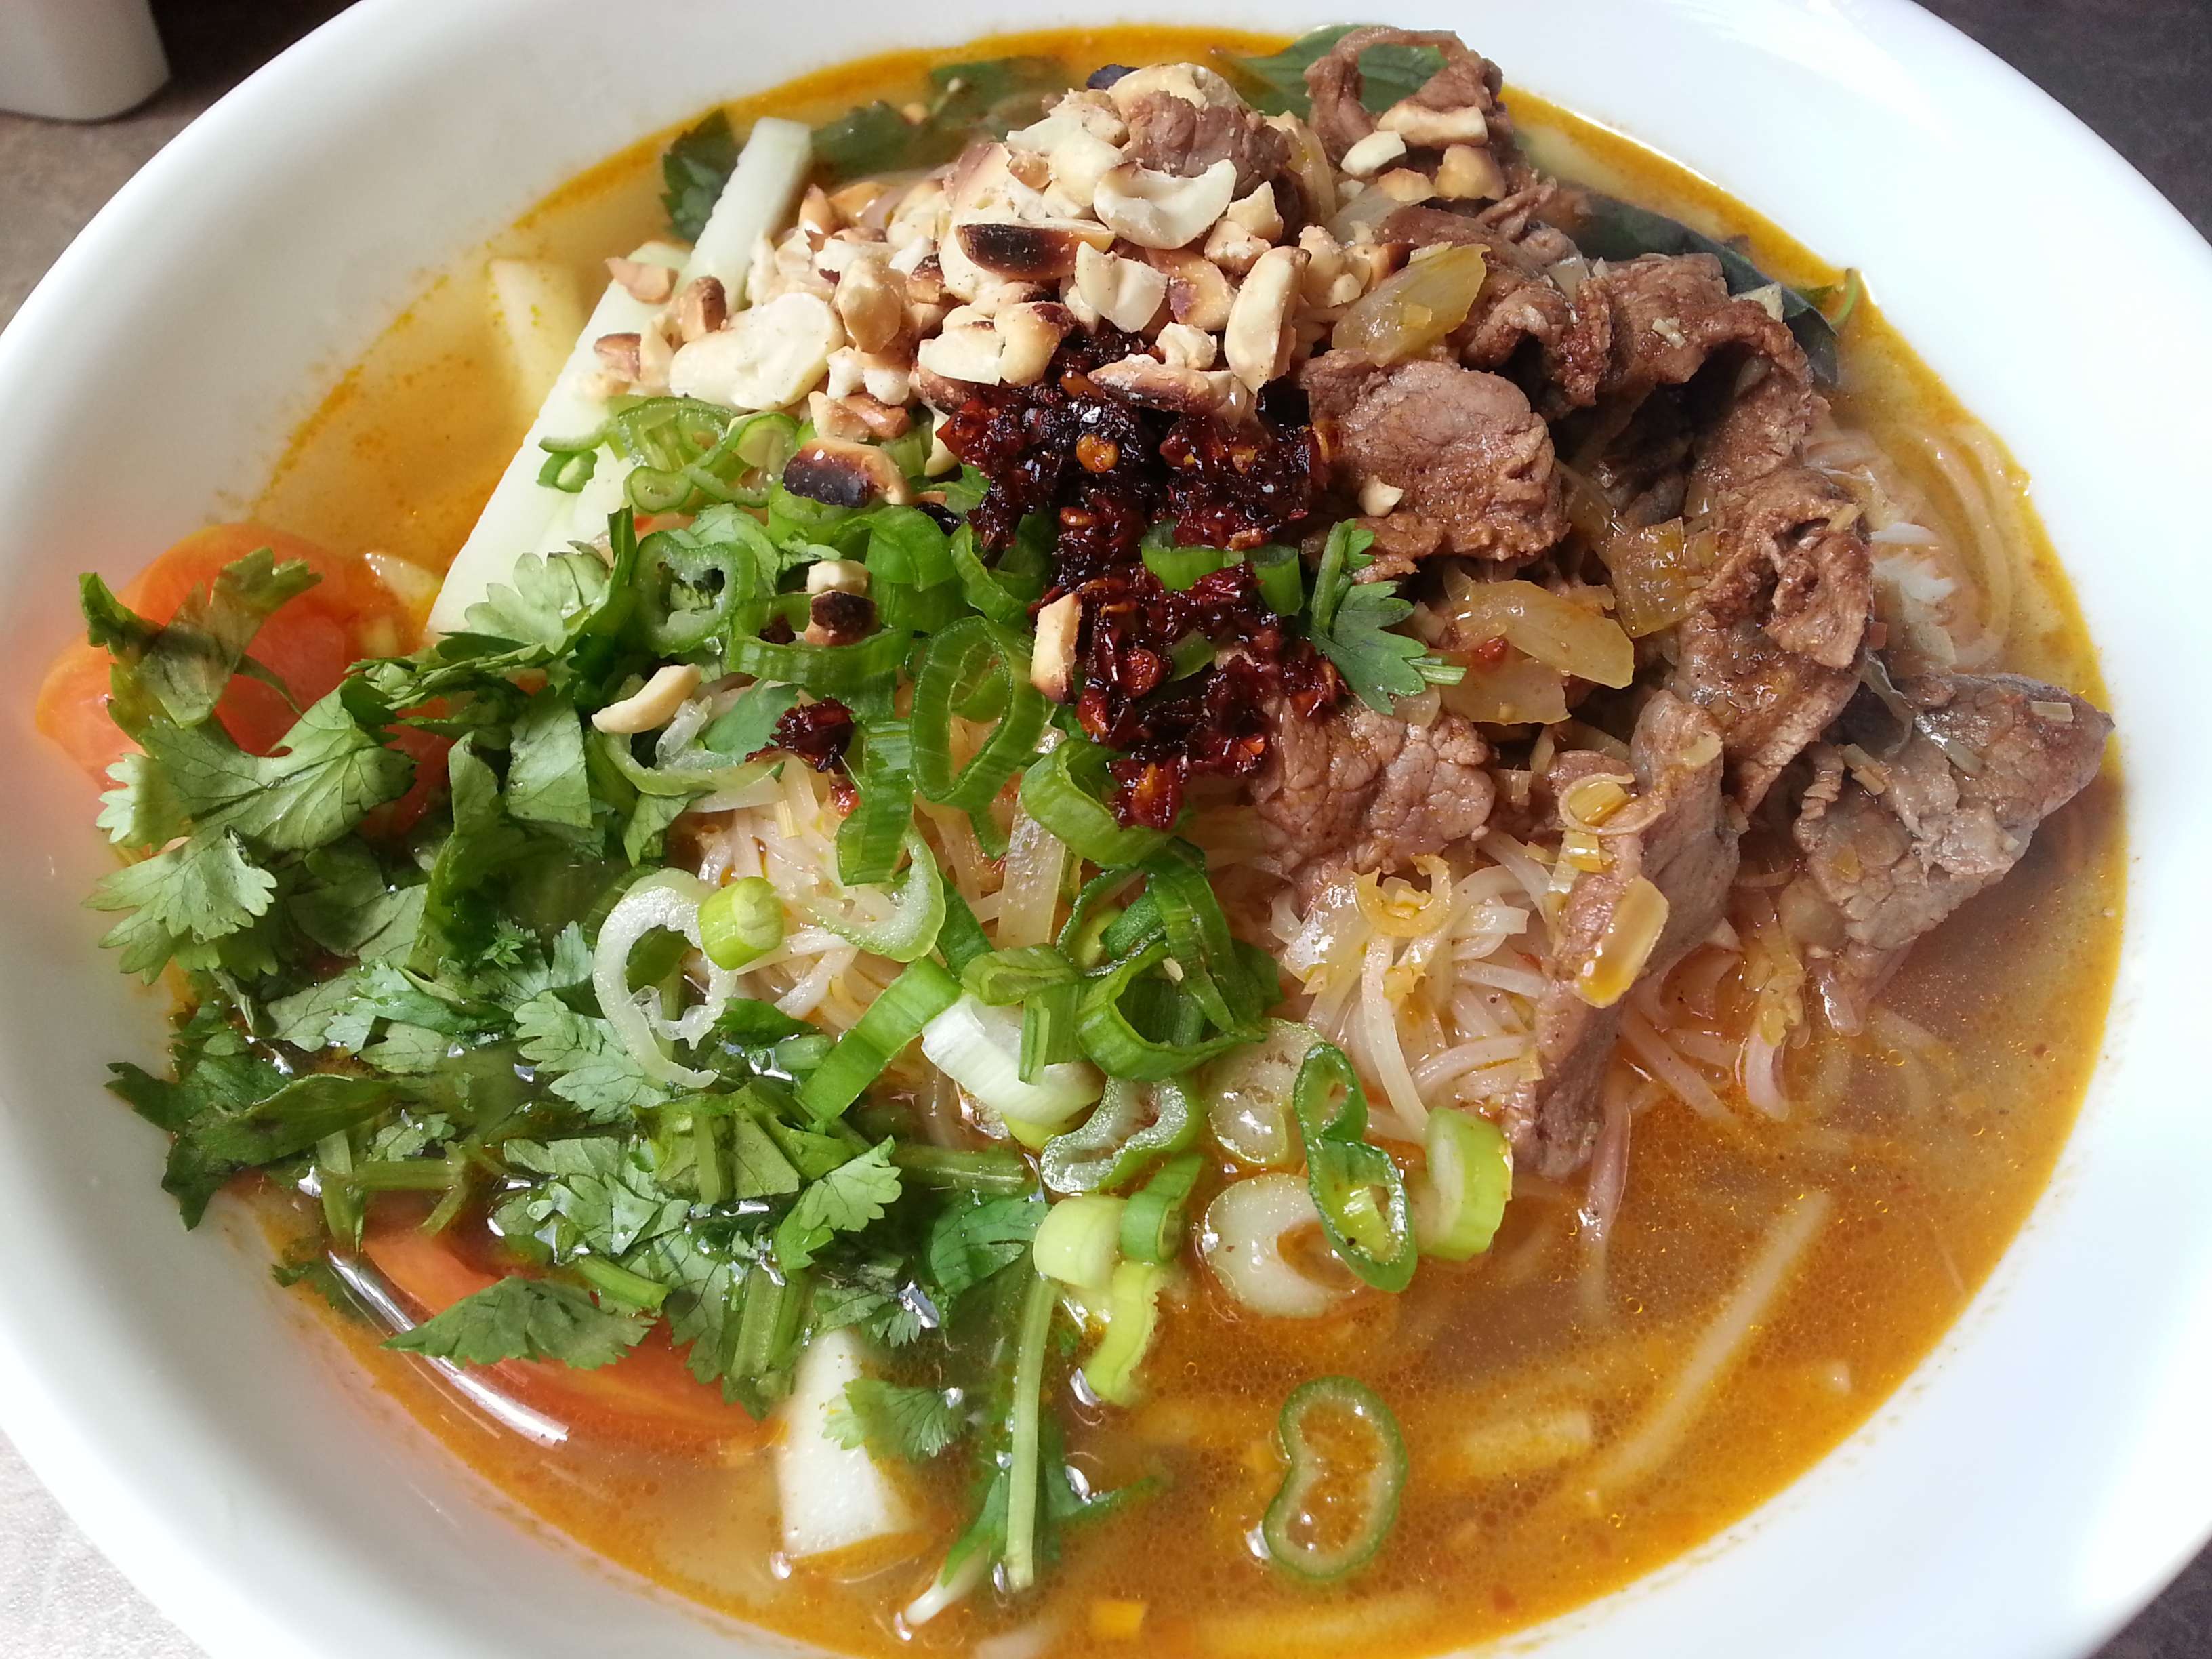 Top 20 quán hủ tiếu Sài Gòn ngon khó cưỡng “ăn 1 tô gọi thêm tô nữa”